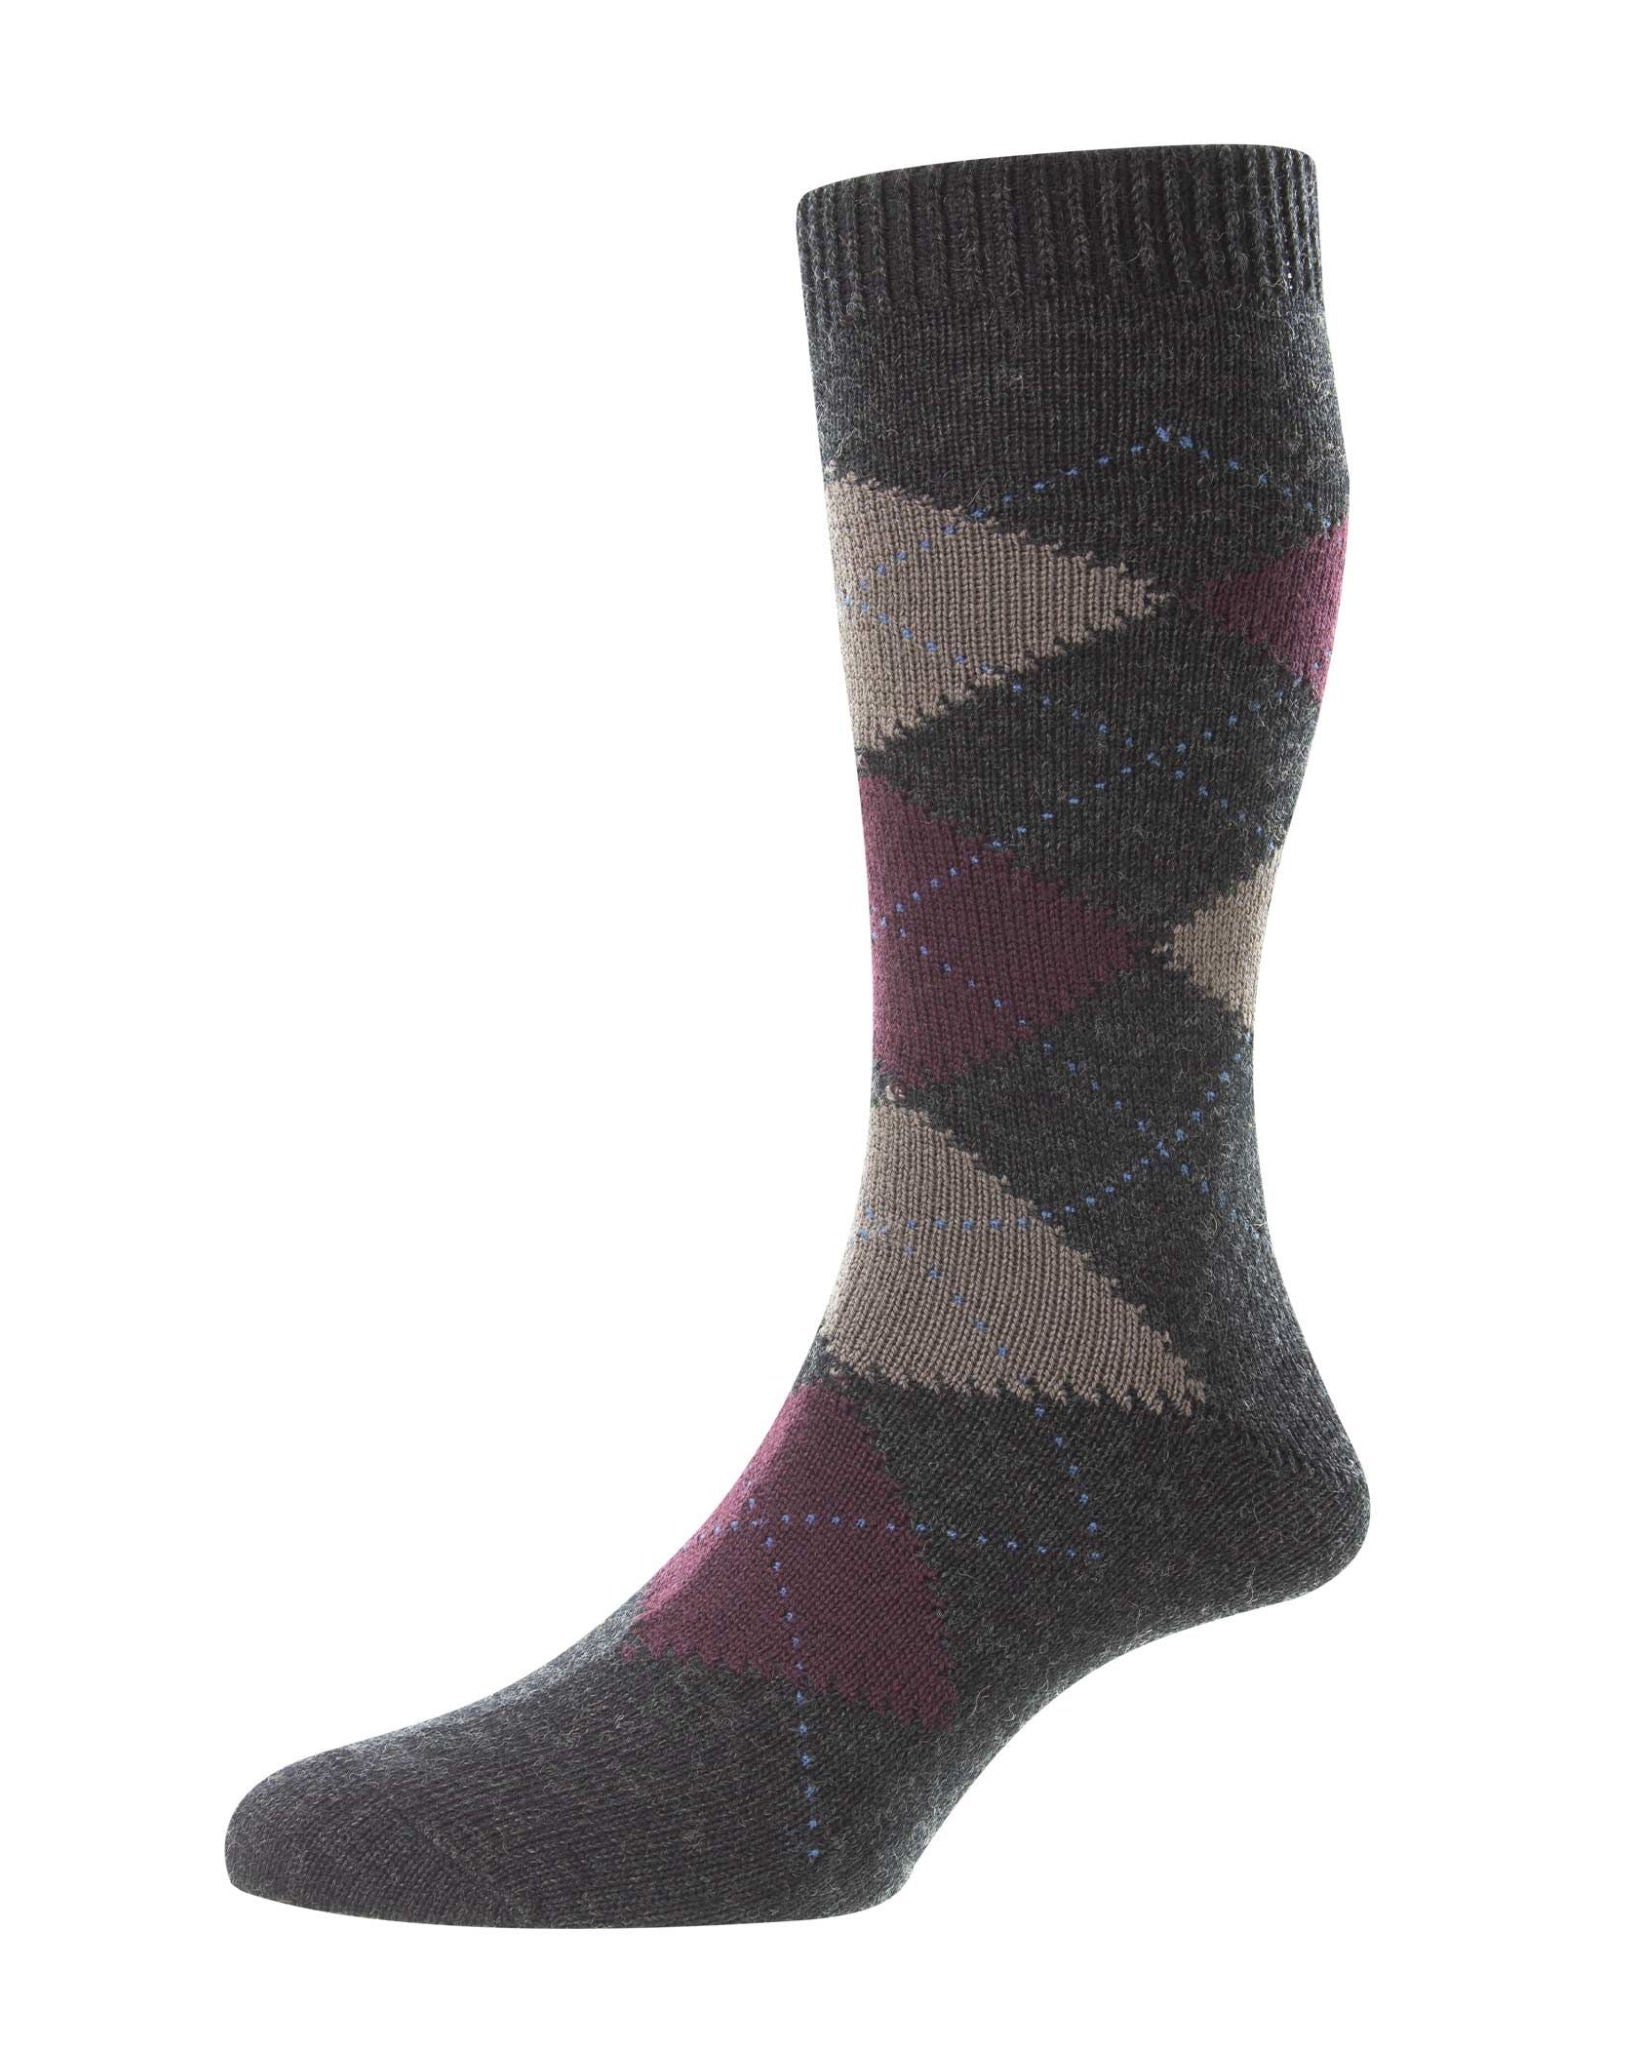 Racton Socks - Charcoal